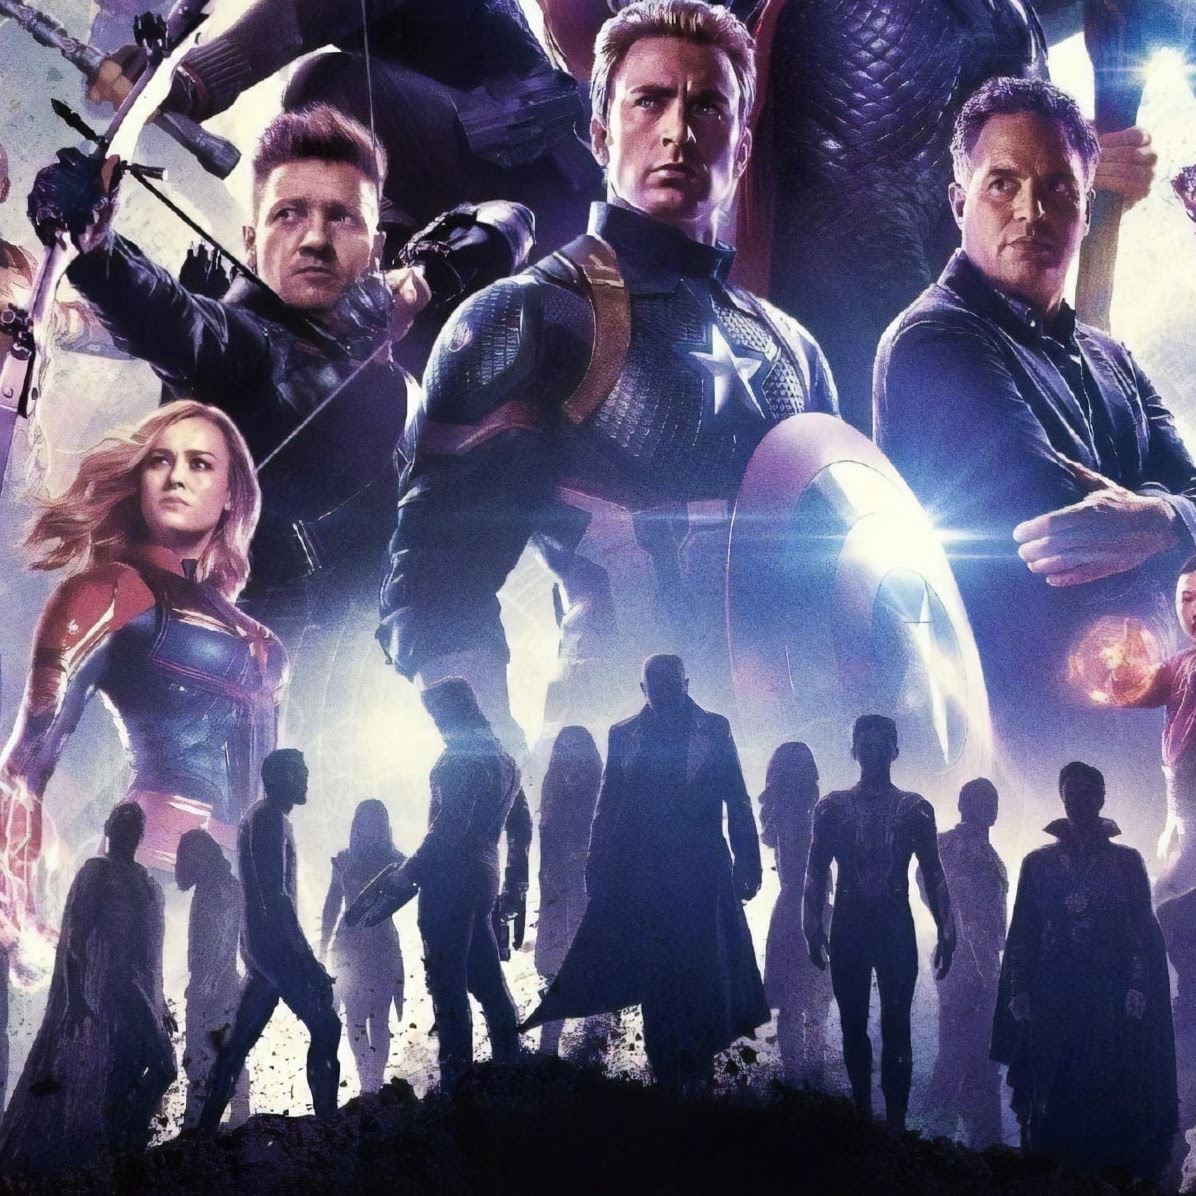 Avengers Endgame Textless Poster マーベルのヒーロー大集合映画のクライマックス アベンジャーズ エンドゲーム の海外版ポスターに 映画のタイトルや出演者の名前の文字を配置する前の素のオリジナル アートの原画ポスター Cia Movie News Extra